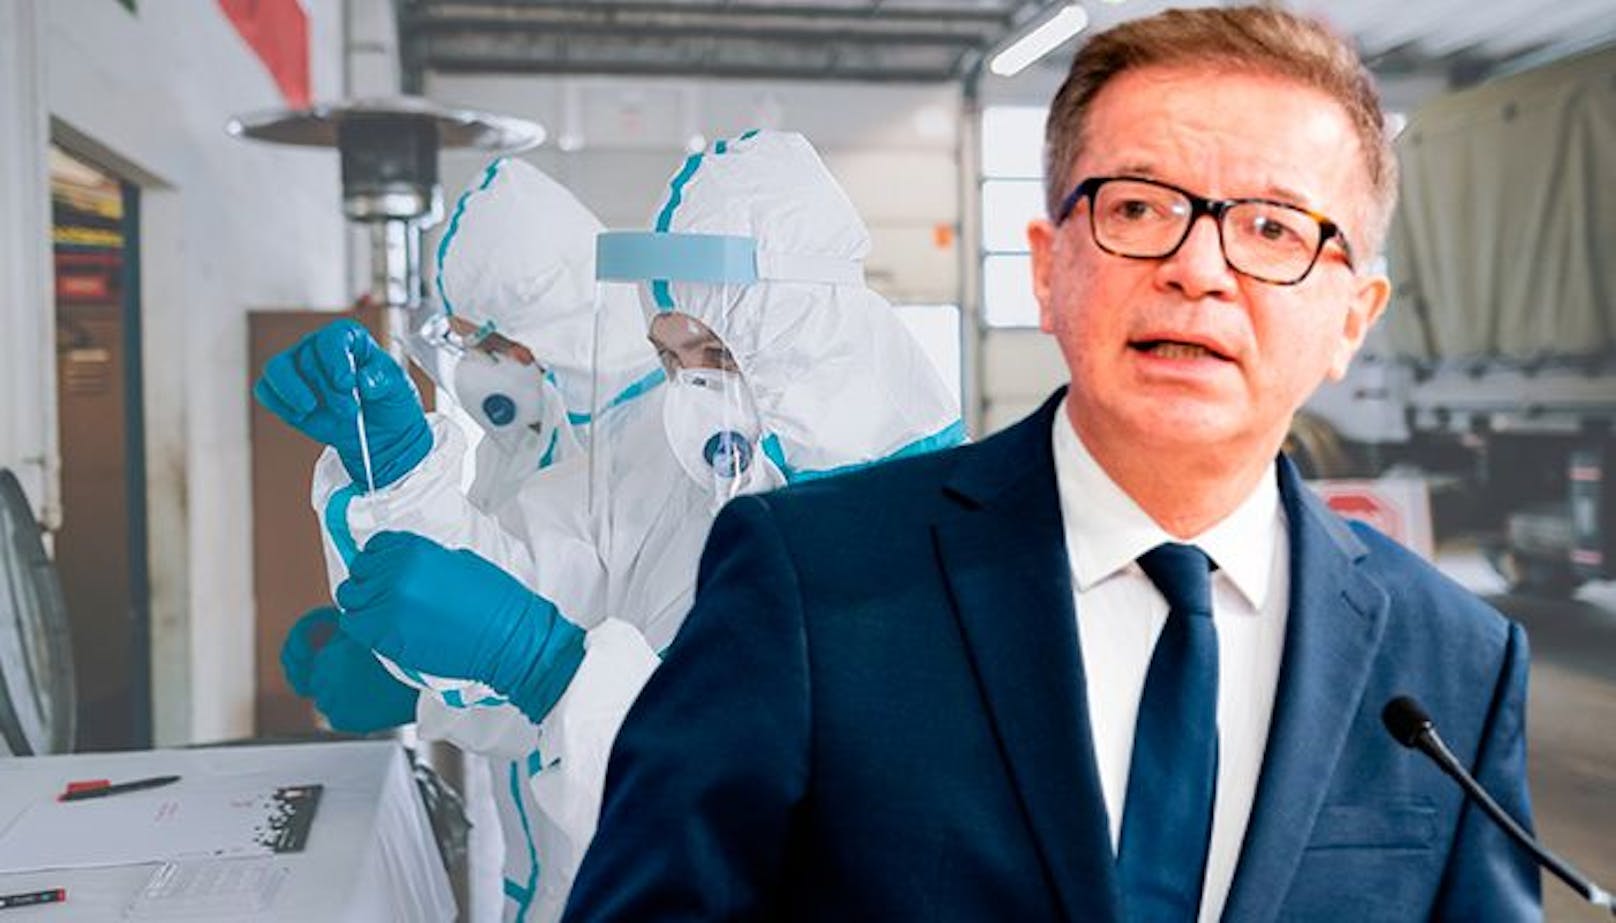 Gesundheitsminister Anschober: "Die Impfung ist ein Meilenstein zur Bekämpfung der Pandemie"